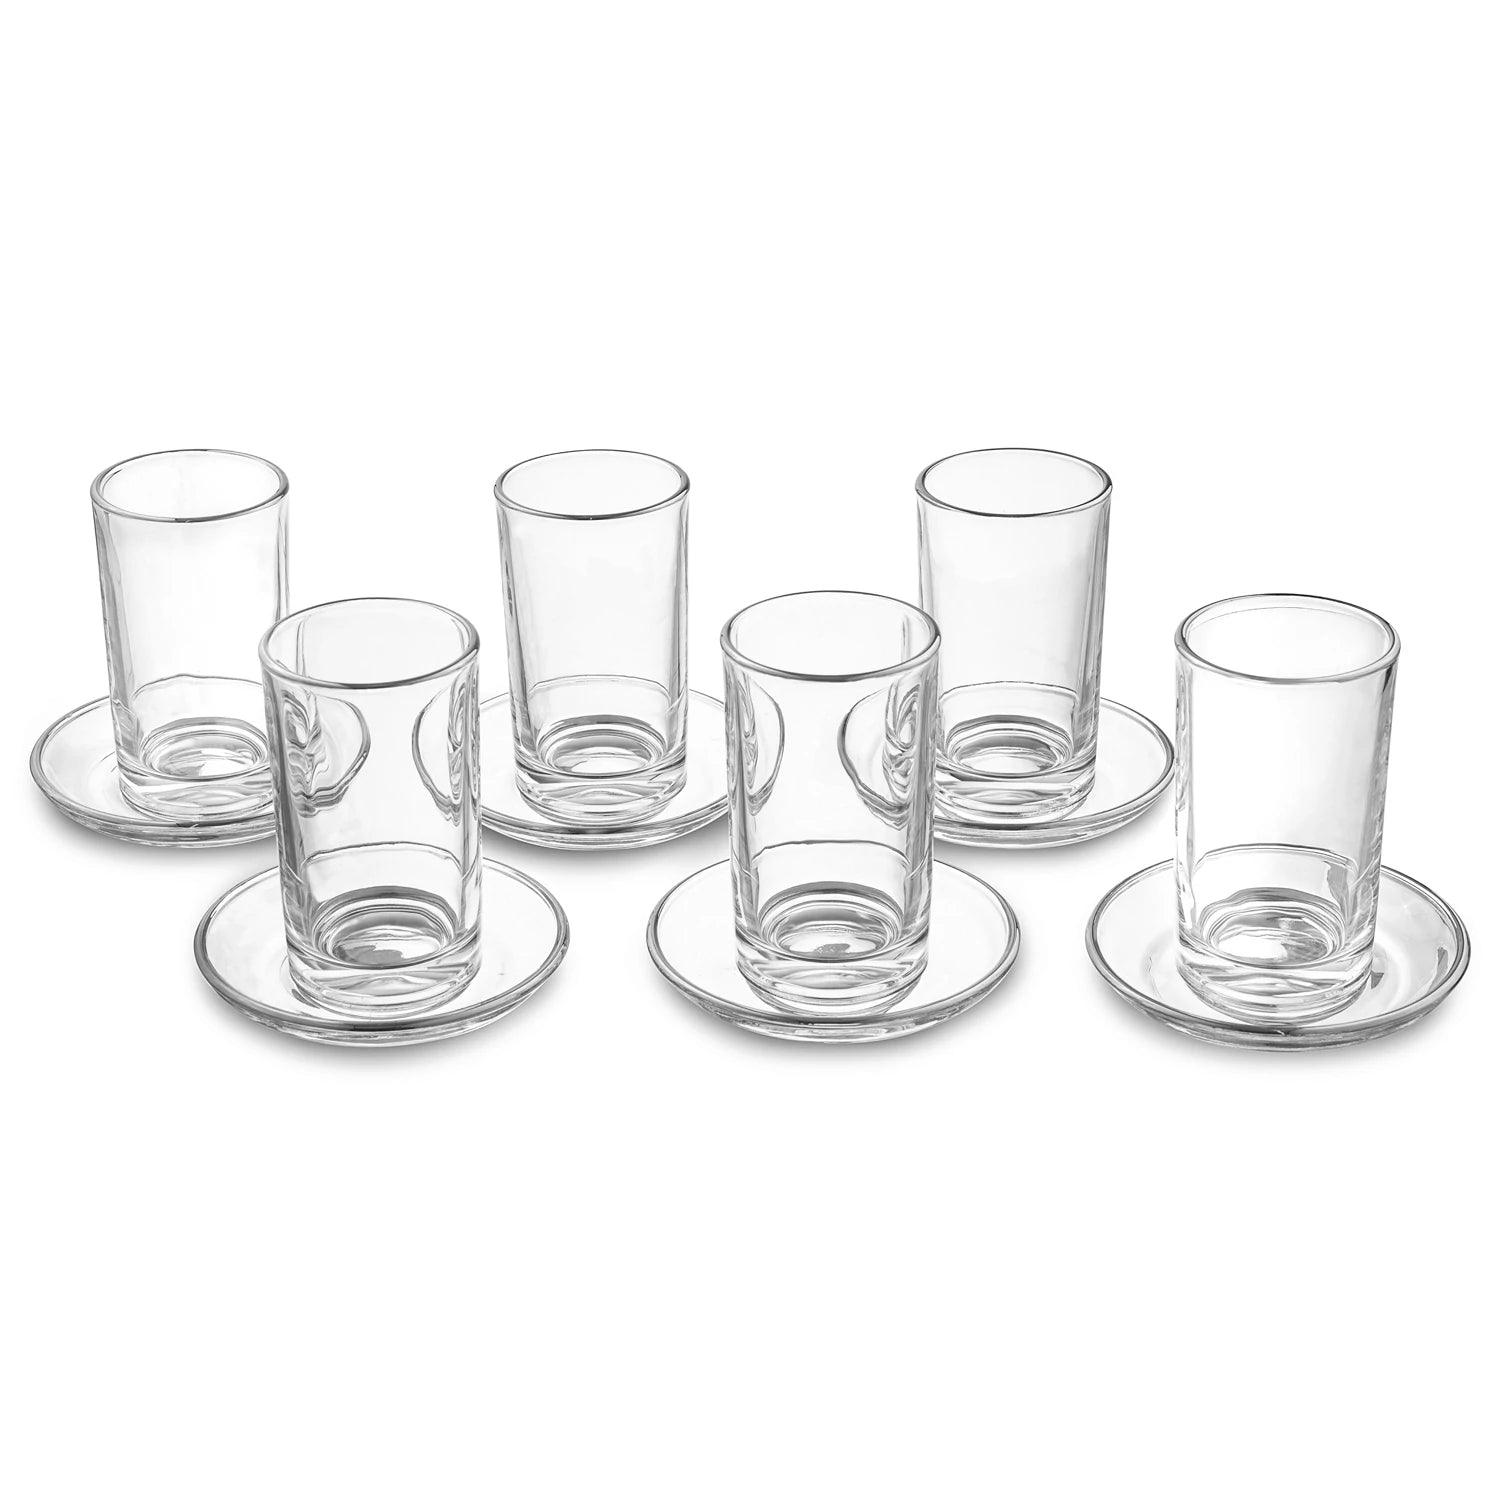 Modern Glass Cups & Saucers - Elegant Linen